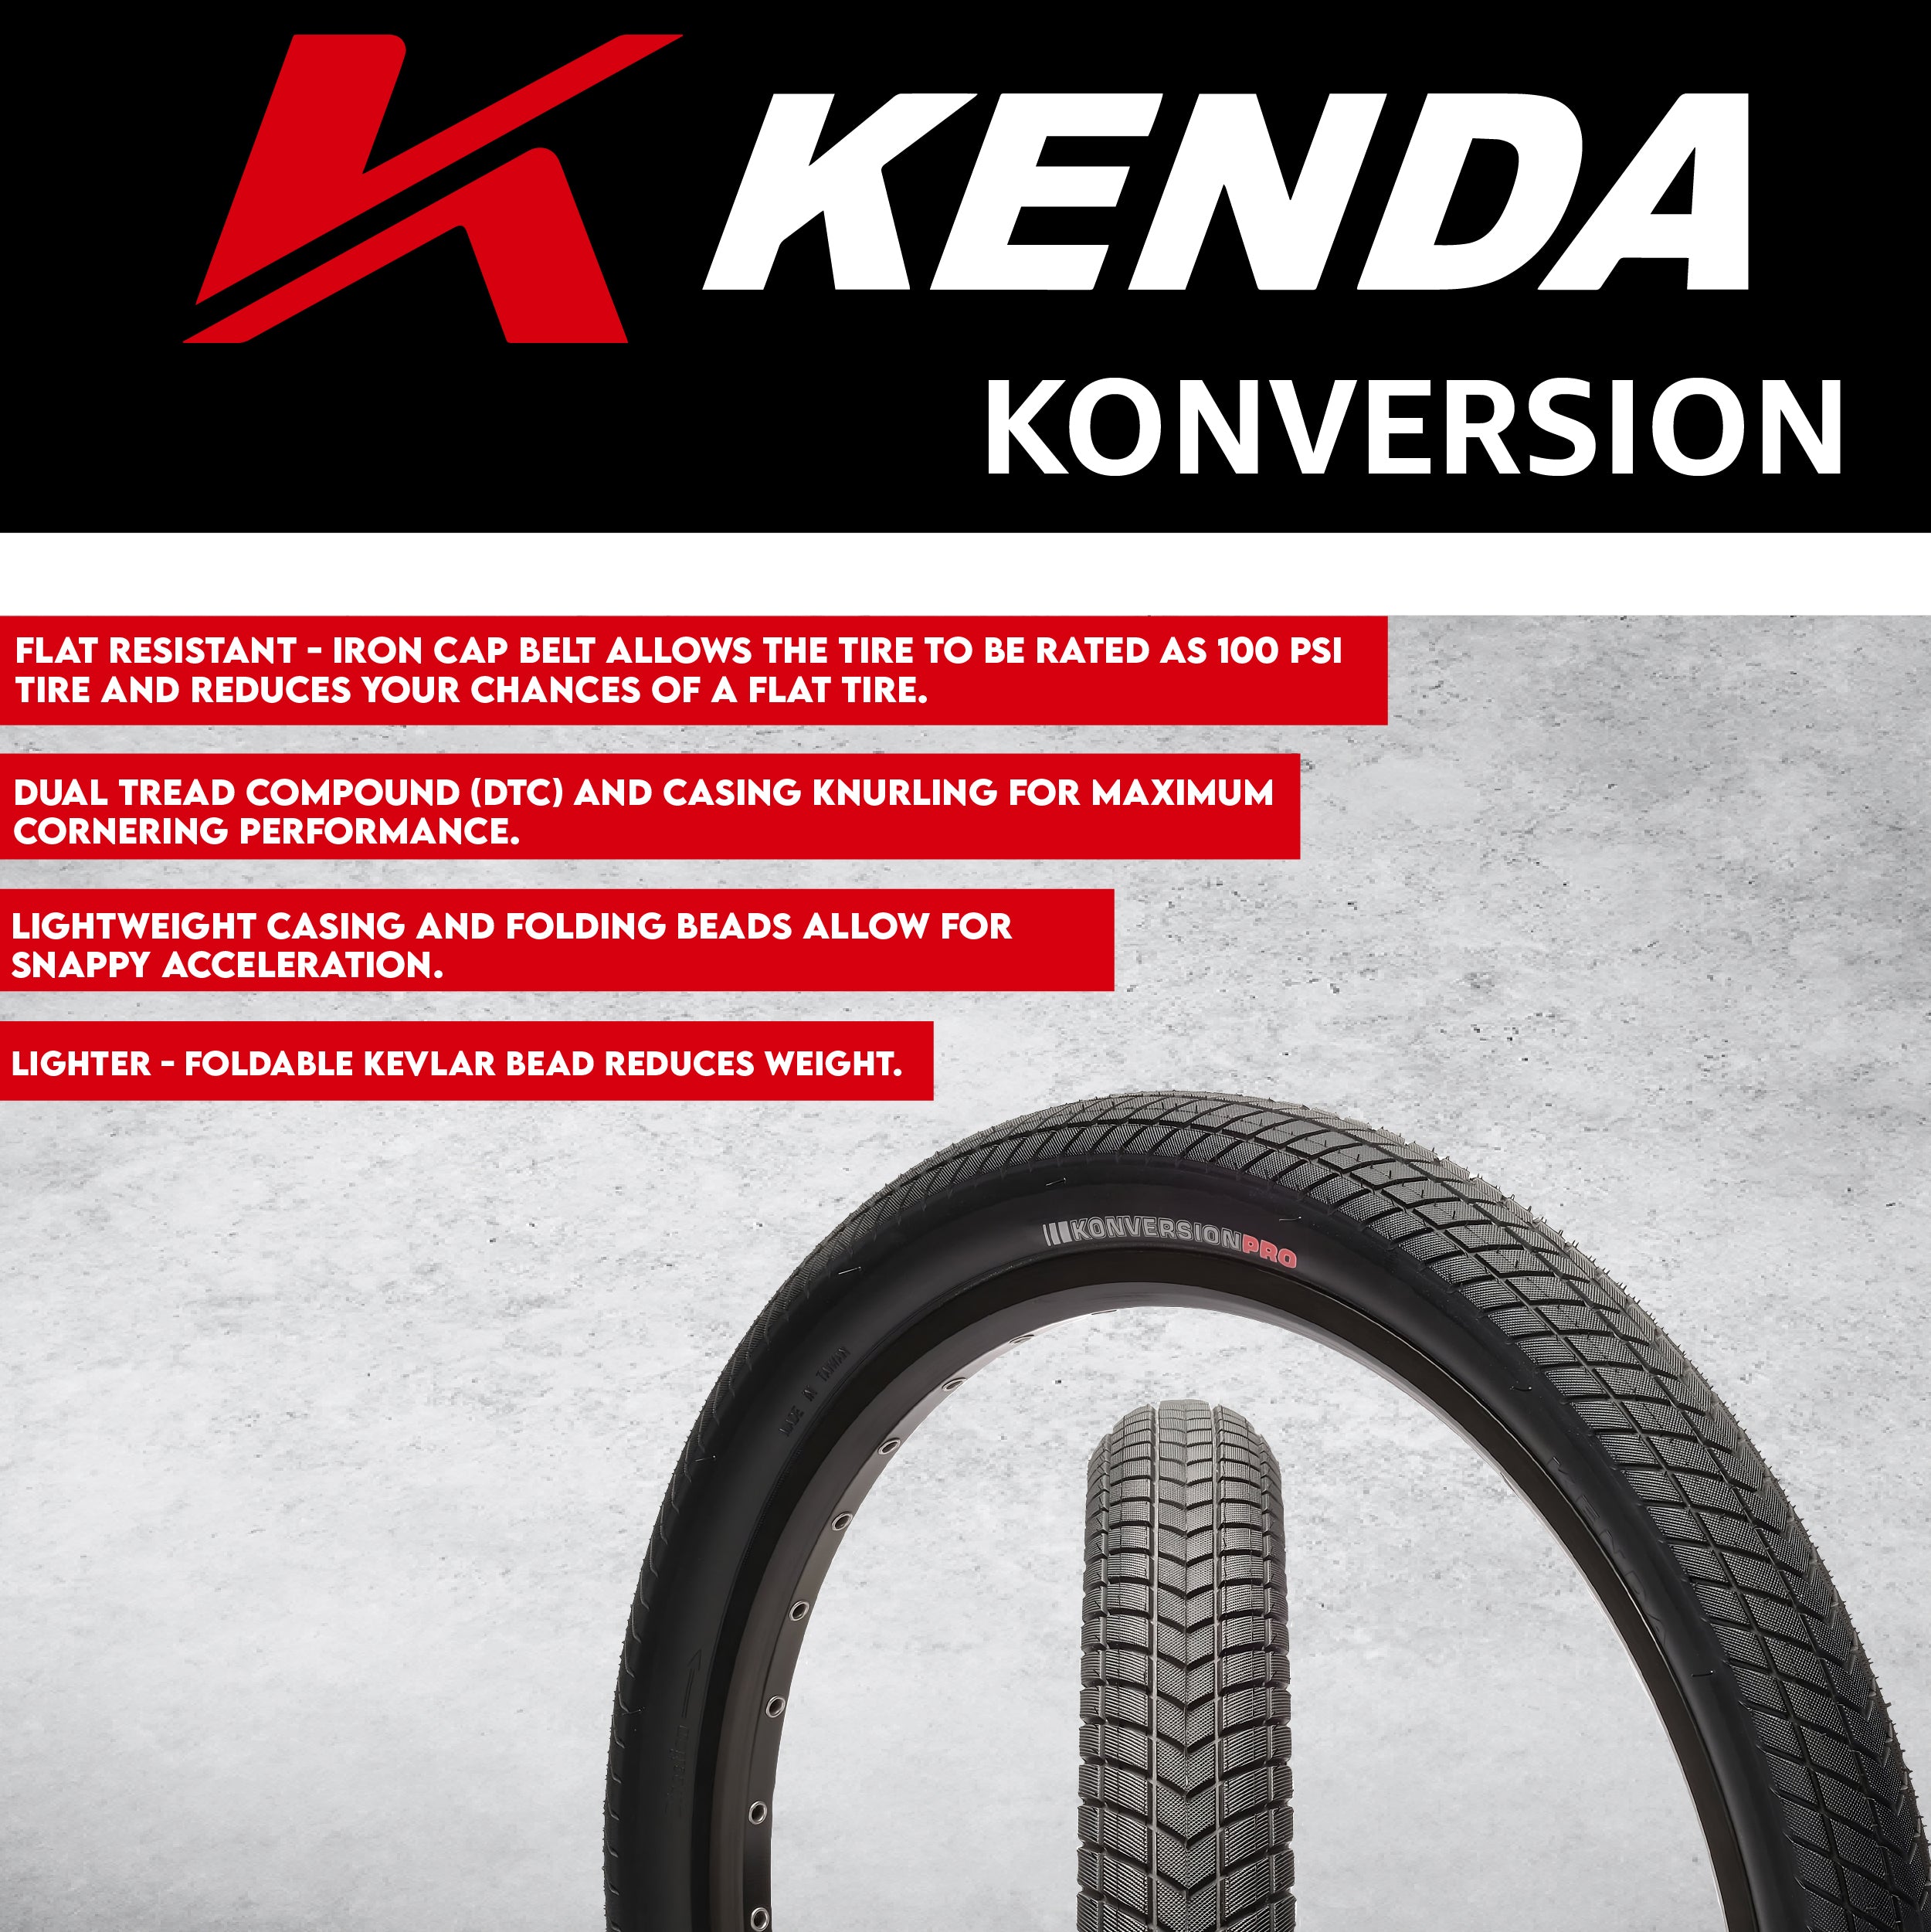 Kenda Konversion Pro 120tpi Fold 24x1.75 BMX Bicycle Tire w/ Keychain (Single)